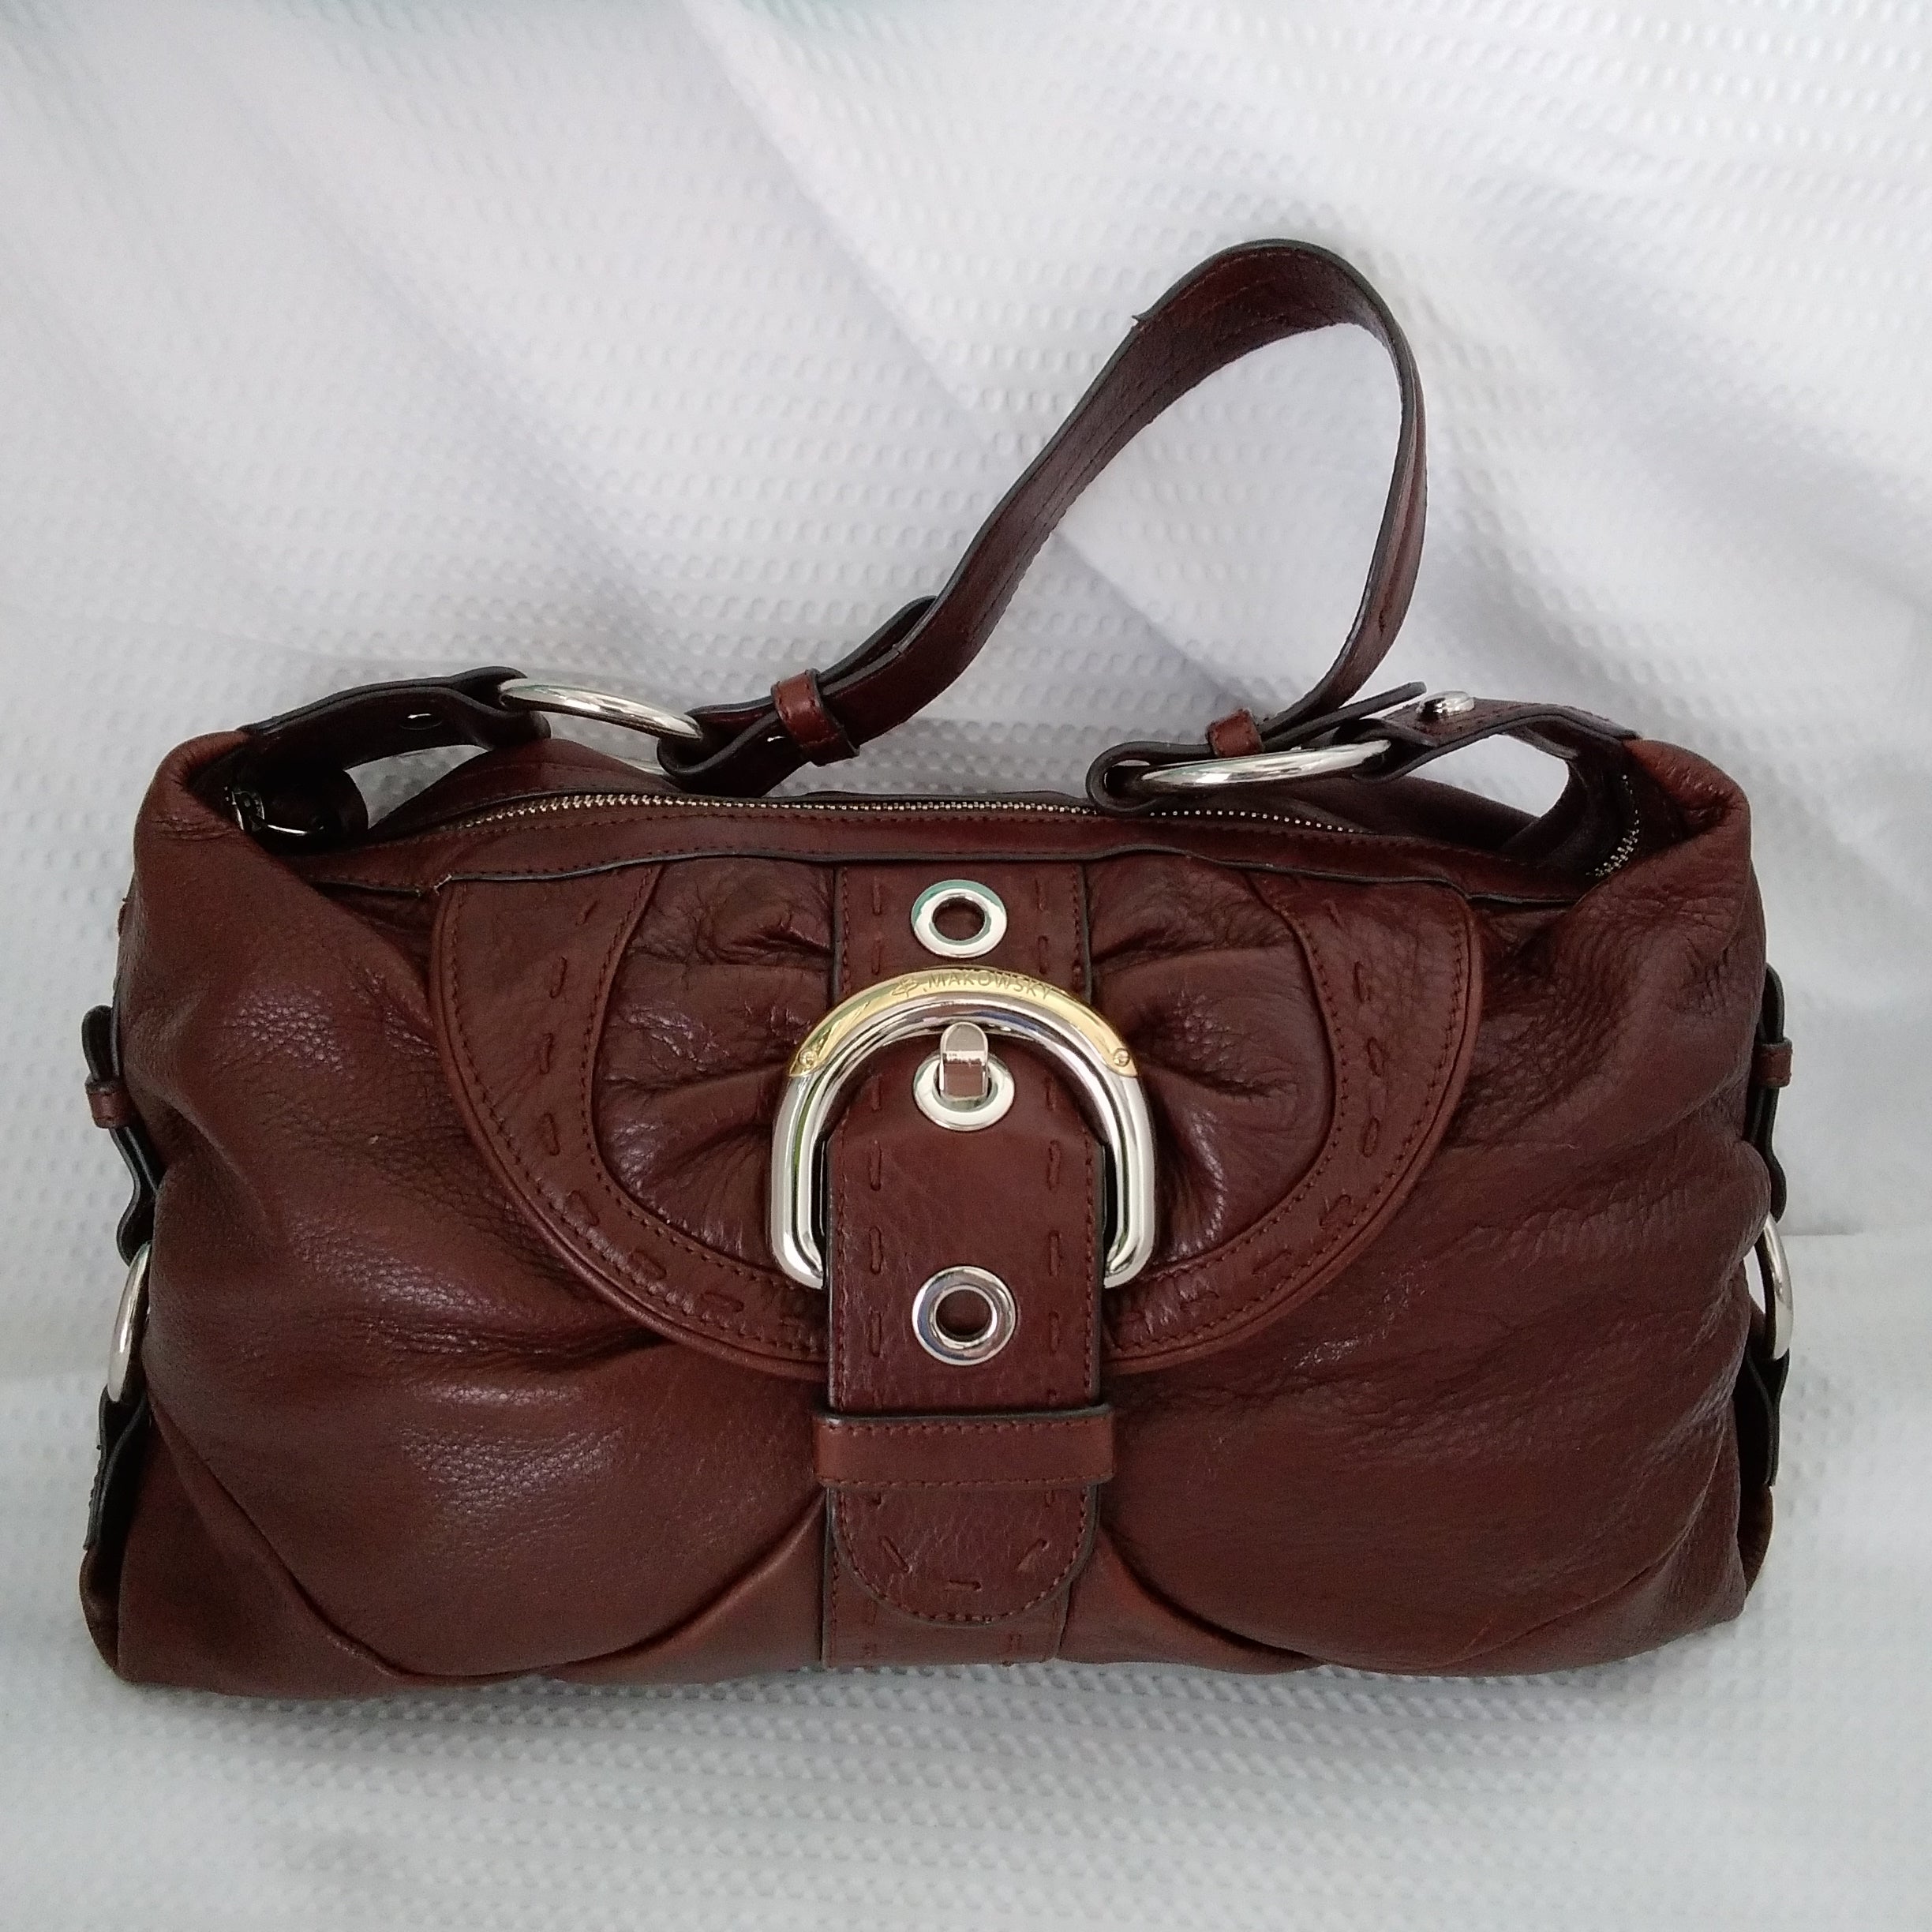 B Makowsky Leather Shoulder Bag Tan Purse Silver Hardware Leopard Print  Liner | eBay